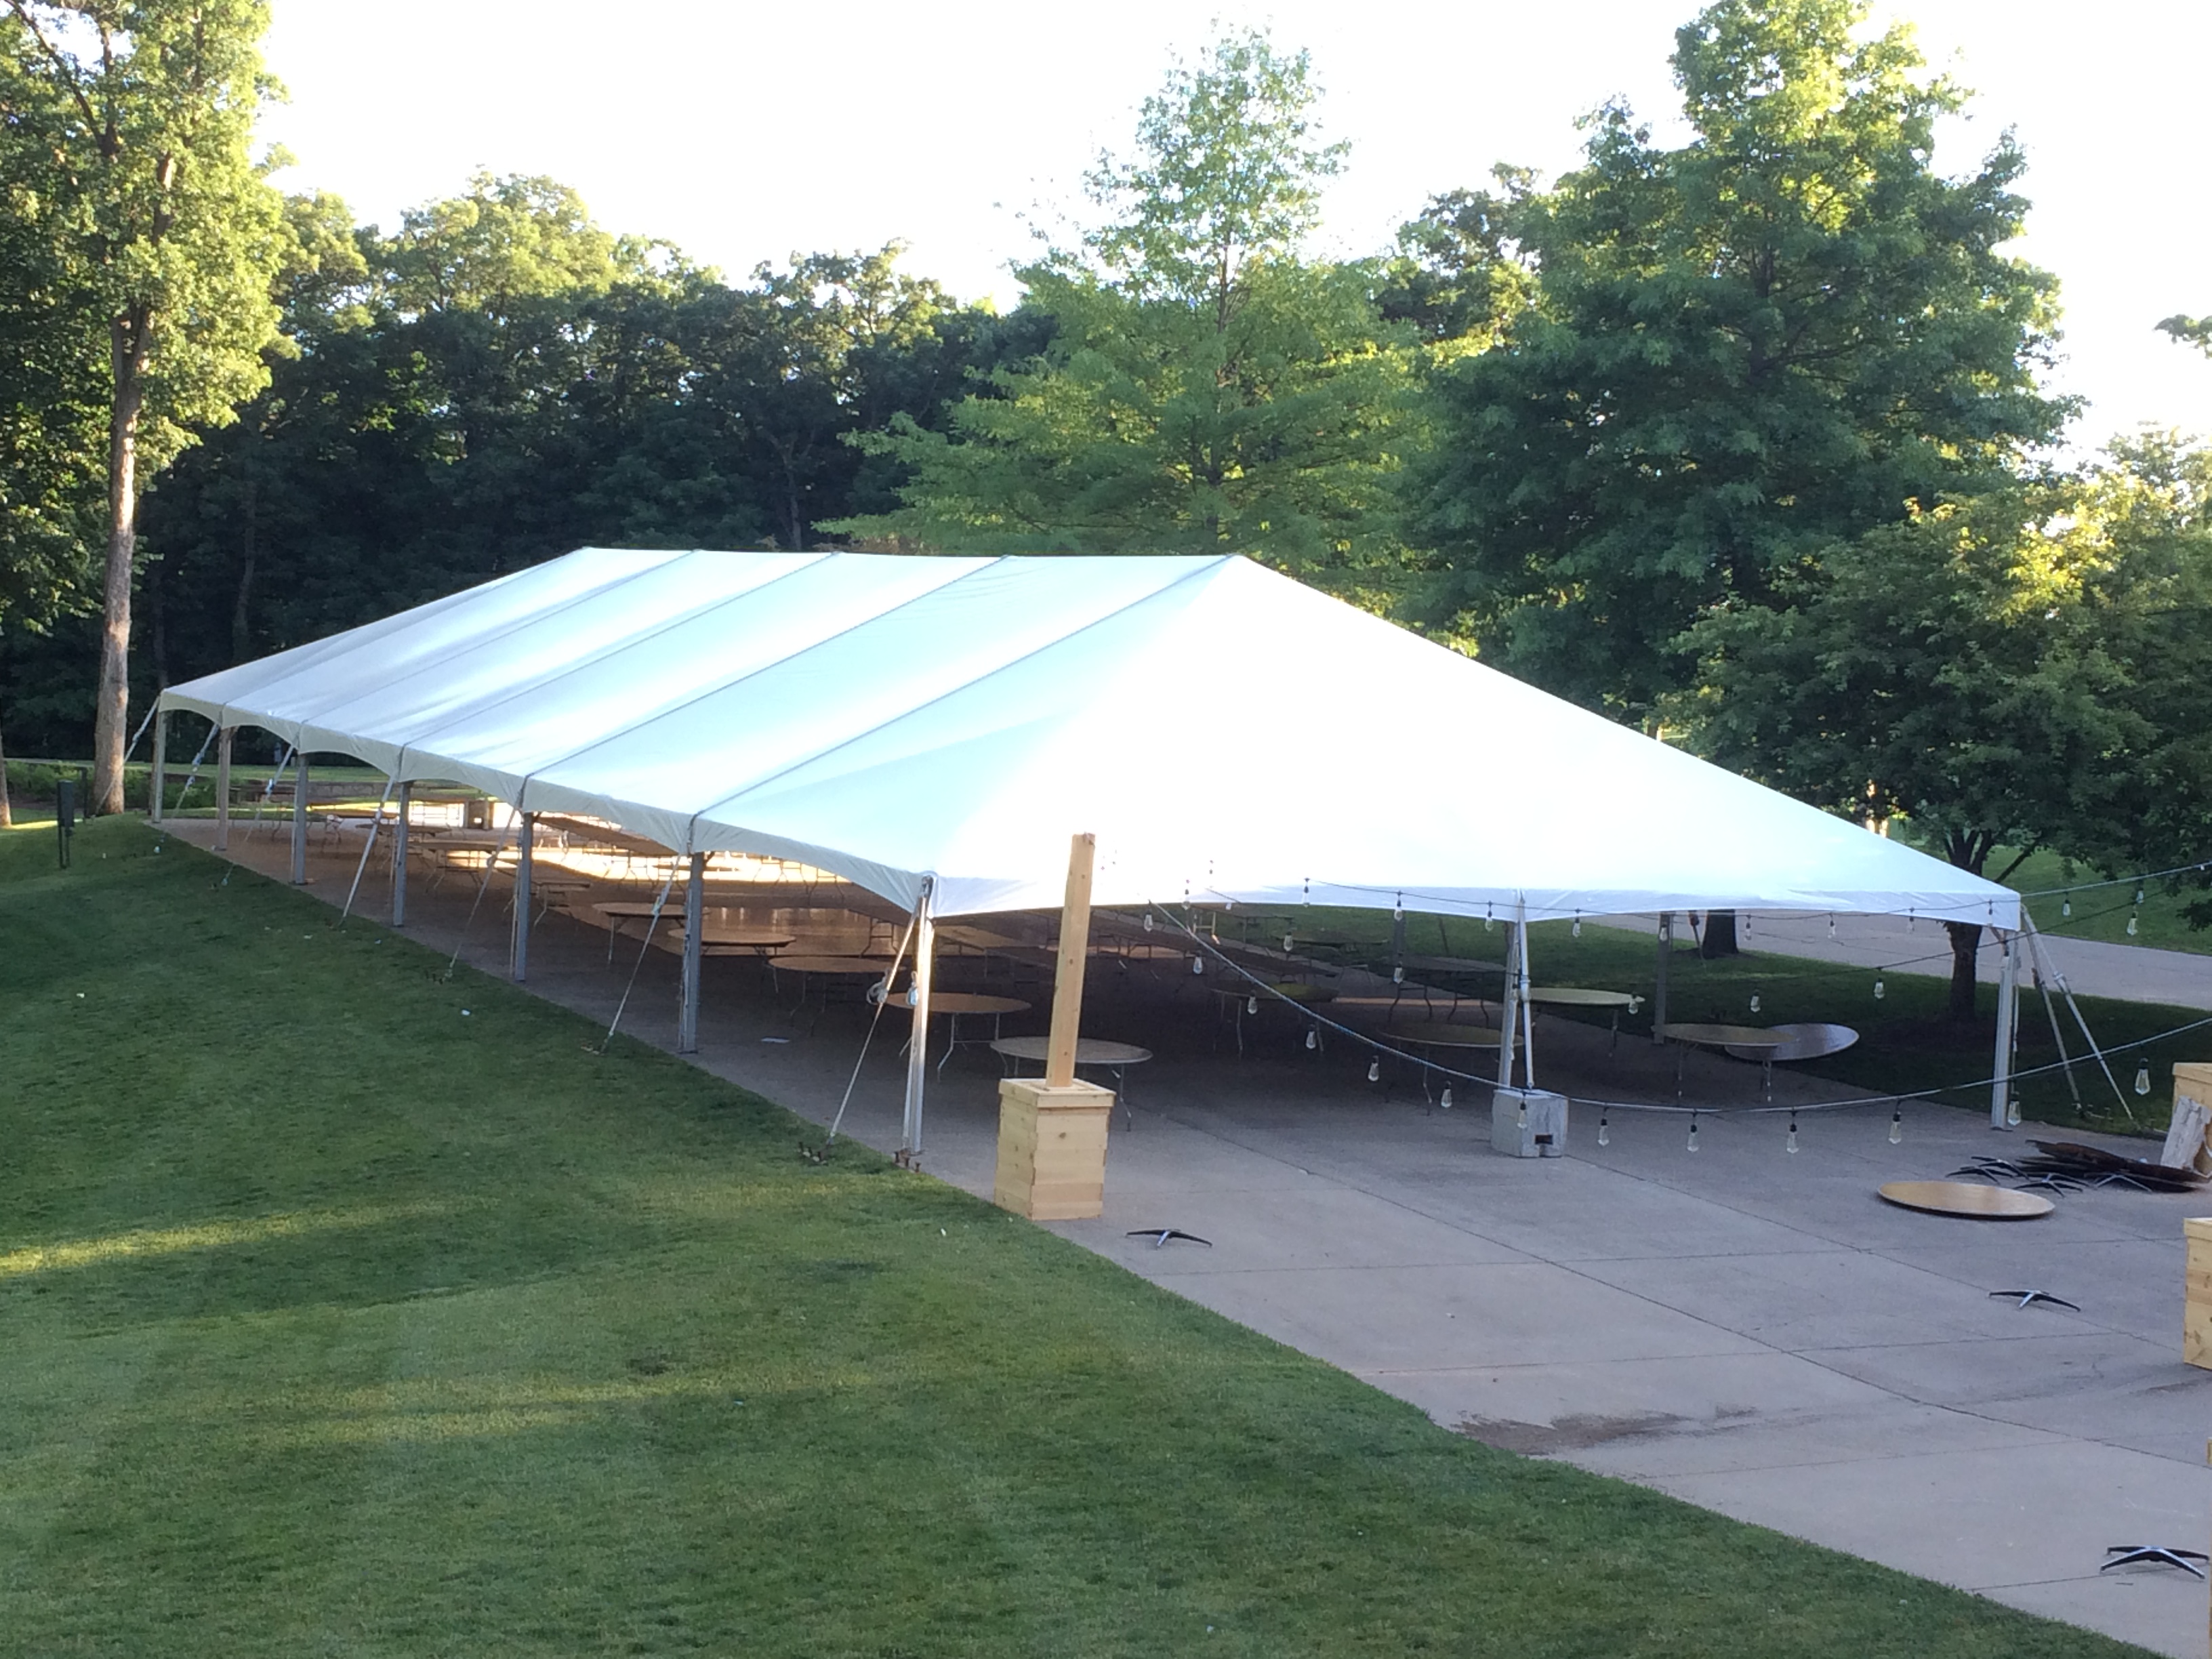 40' x 120' hybrid tent getting ready for a wedding tomorrow.